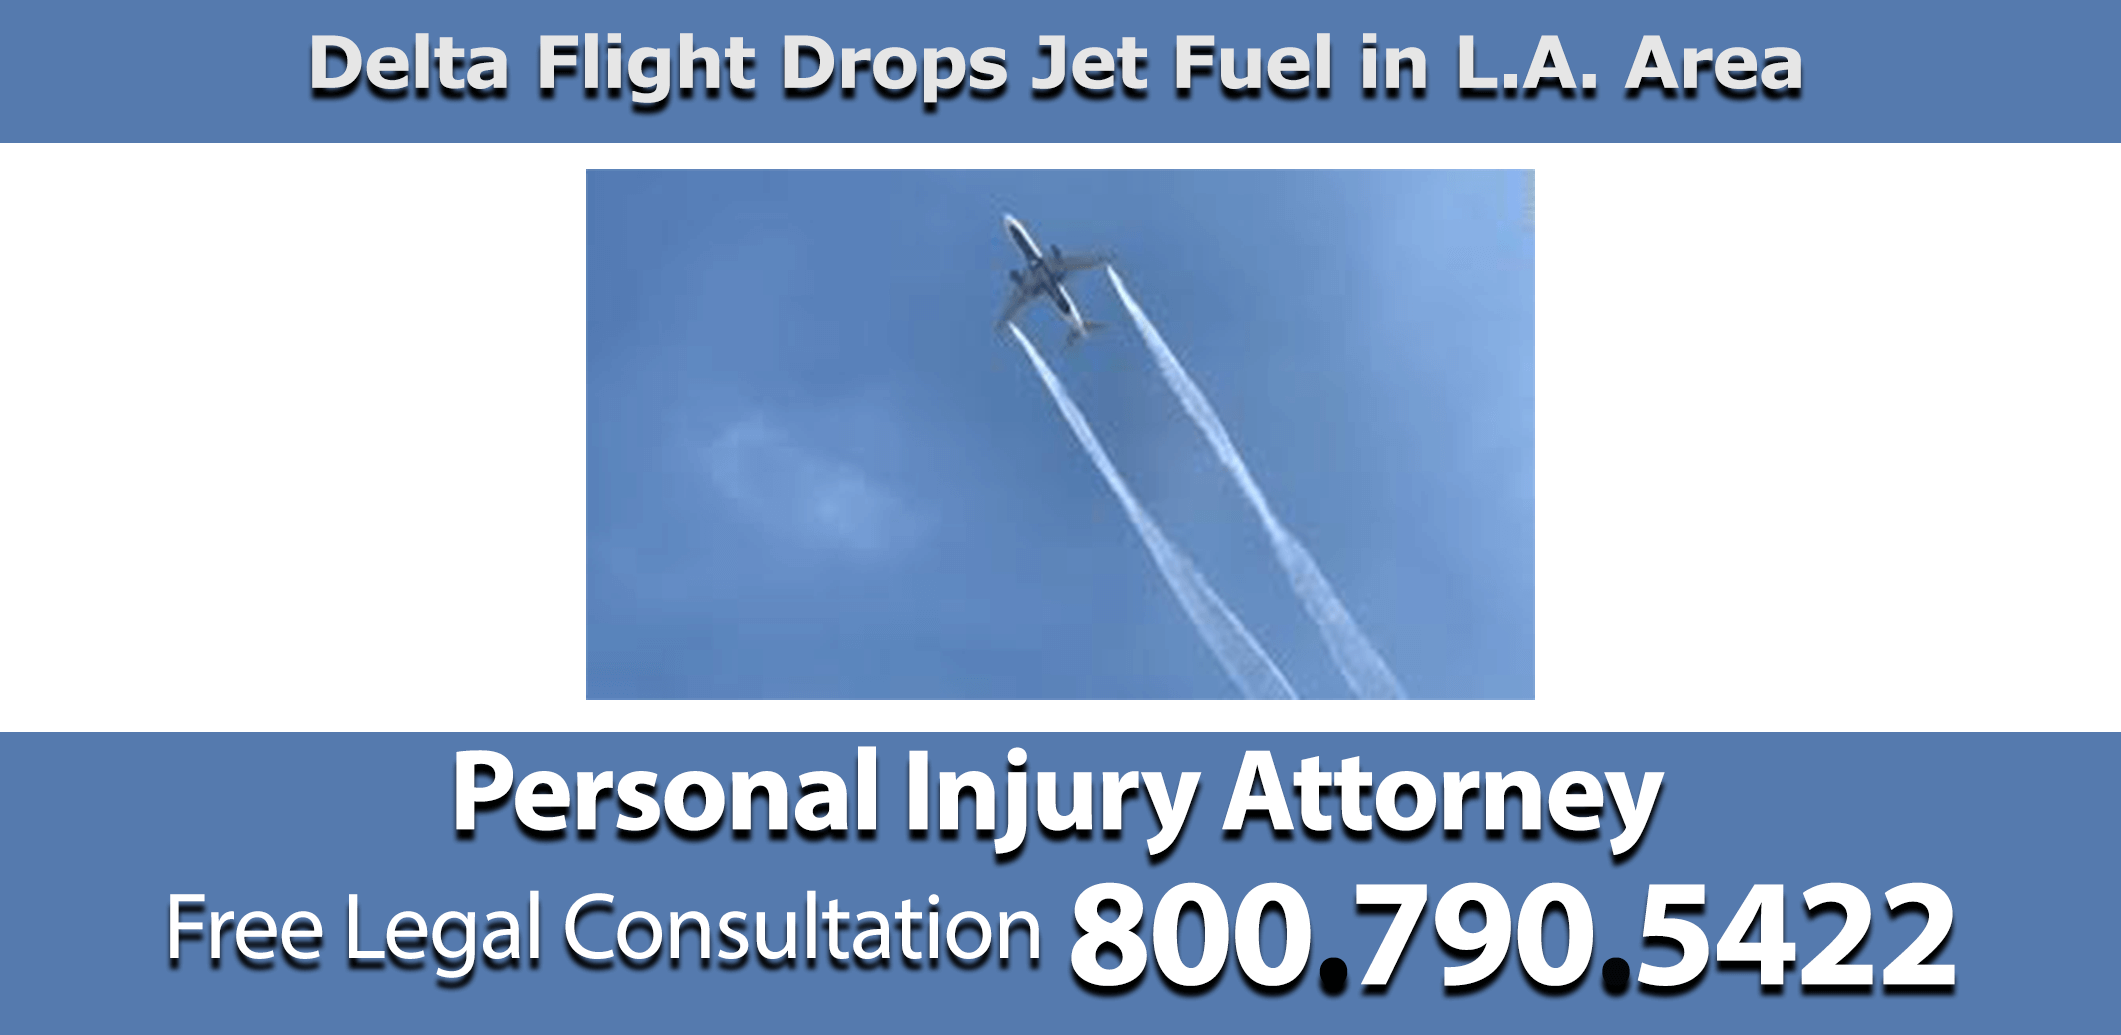 Delta Flight drops fuel la area personal injury attorney consultation compensation sue